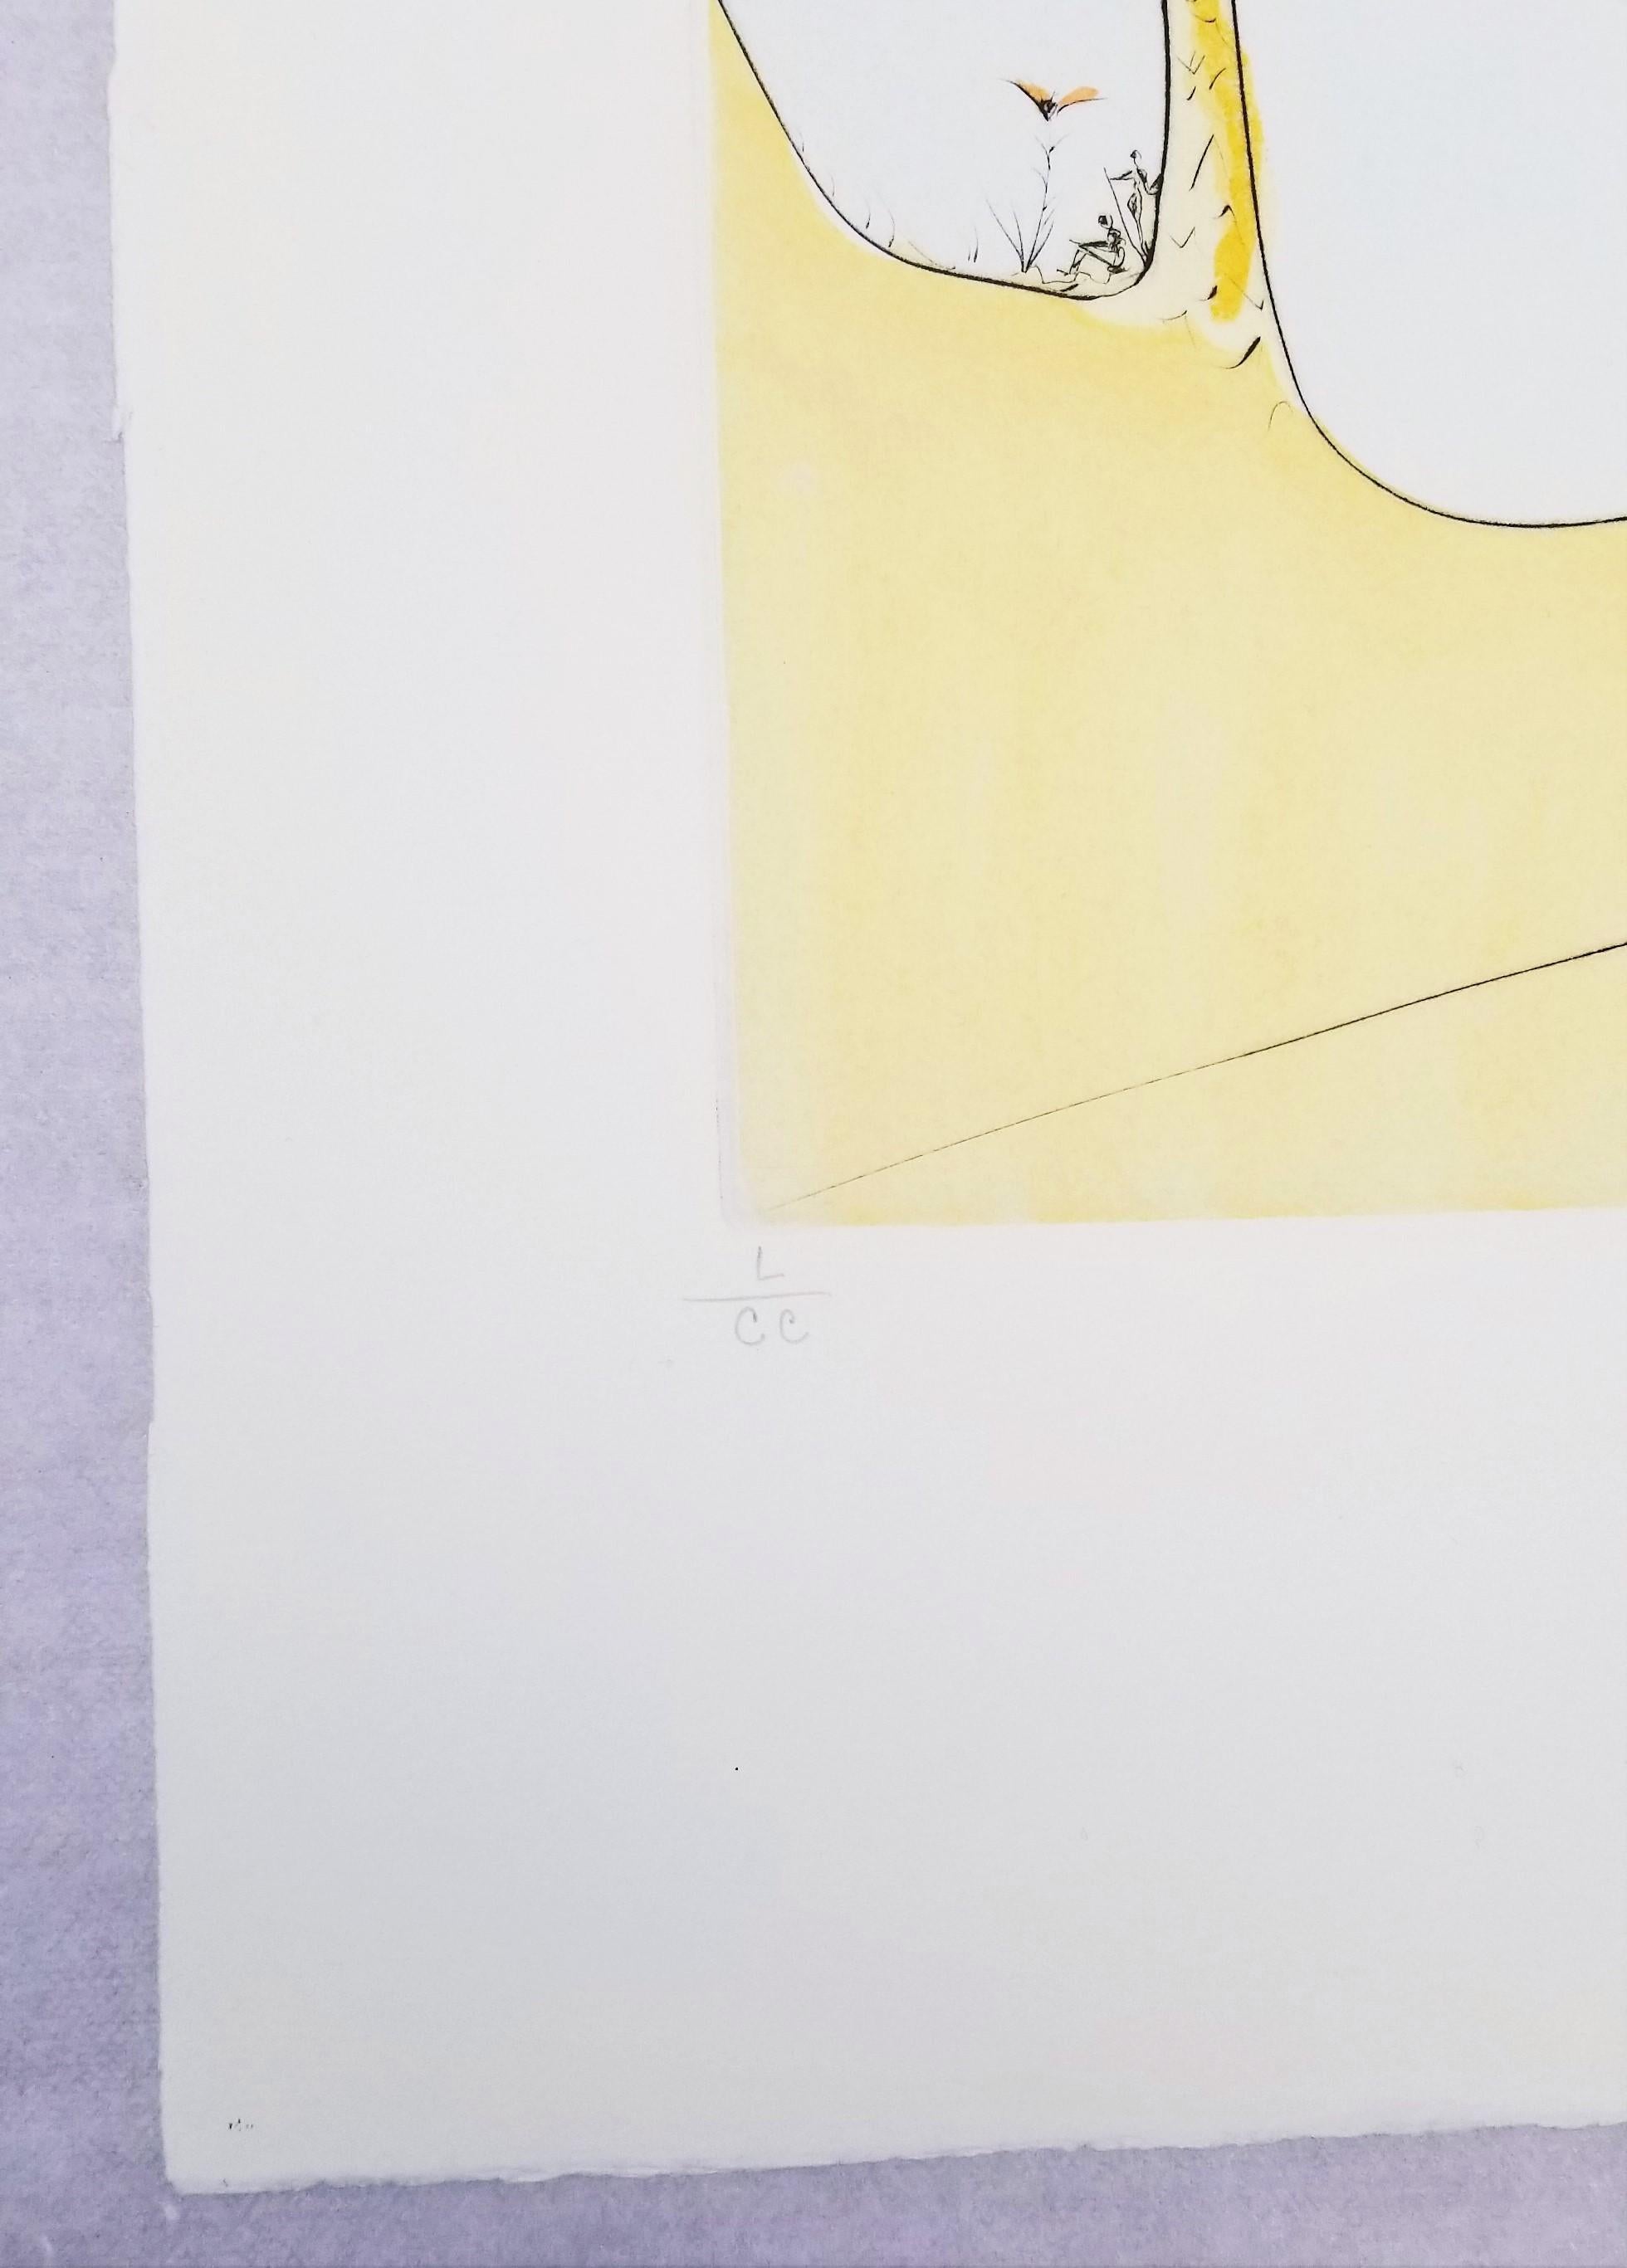 Künstler: Salvador Dali (Spanier, 1904-1989)
Titel: ³eHommage an Picasso (Cannes) (Cote d'Azur)³c
*Signiert von Dali mit Bleistift unten rechts
Jahr: 1973
Medium: Original Kaltnadelradierung auf Rives BFK Papier
Limitierte Auflage: L/CC